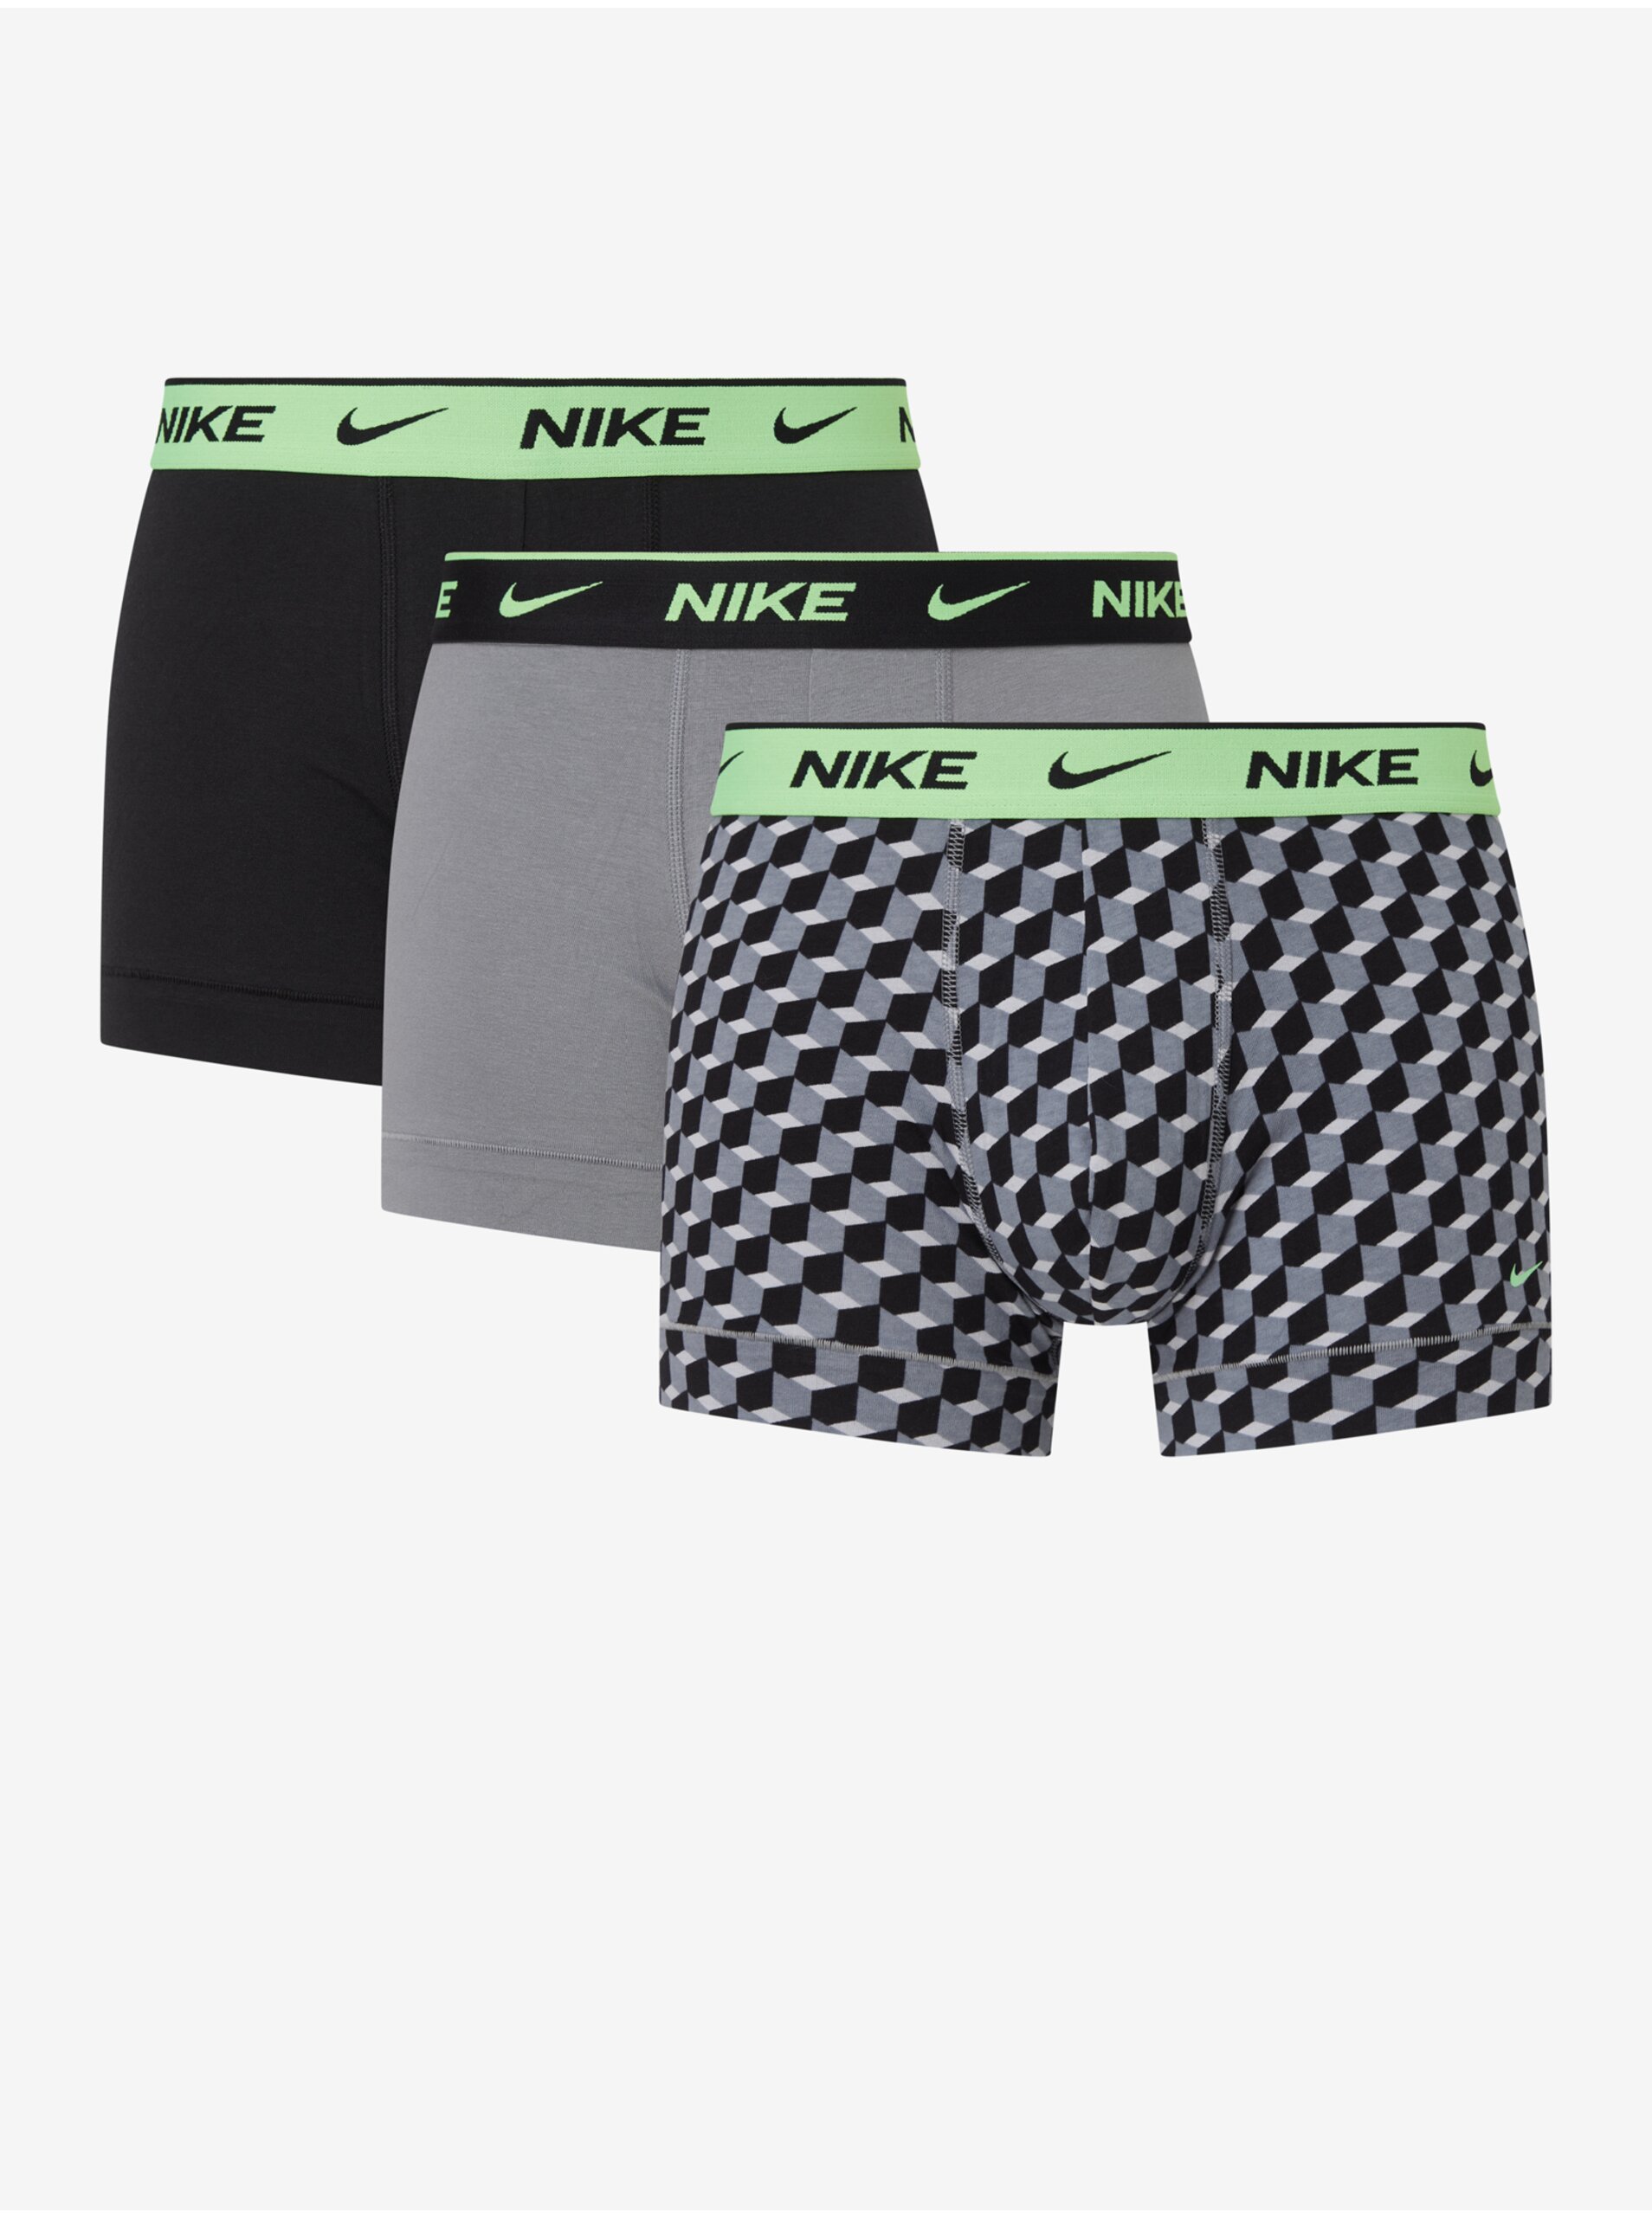 Levně Sada tří pánských boxerek v černé, šedé a vzorované barvě Nike